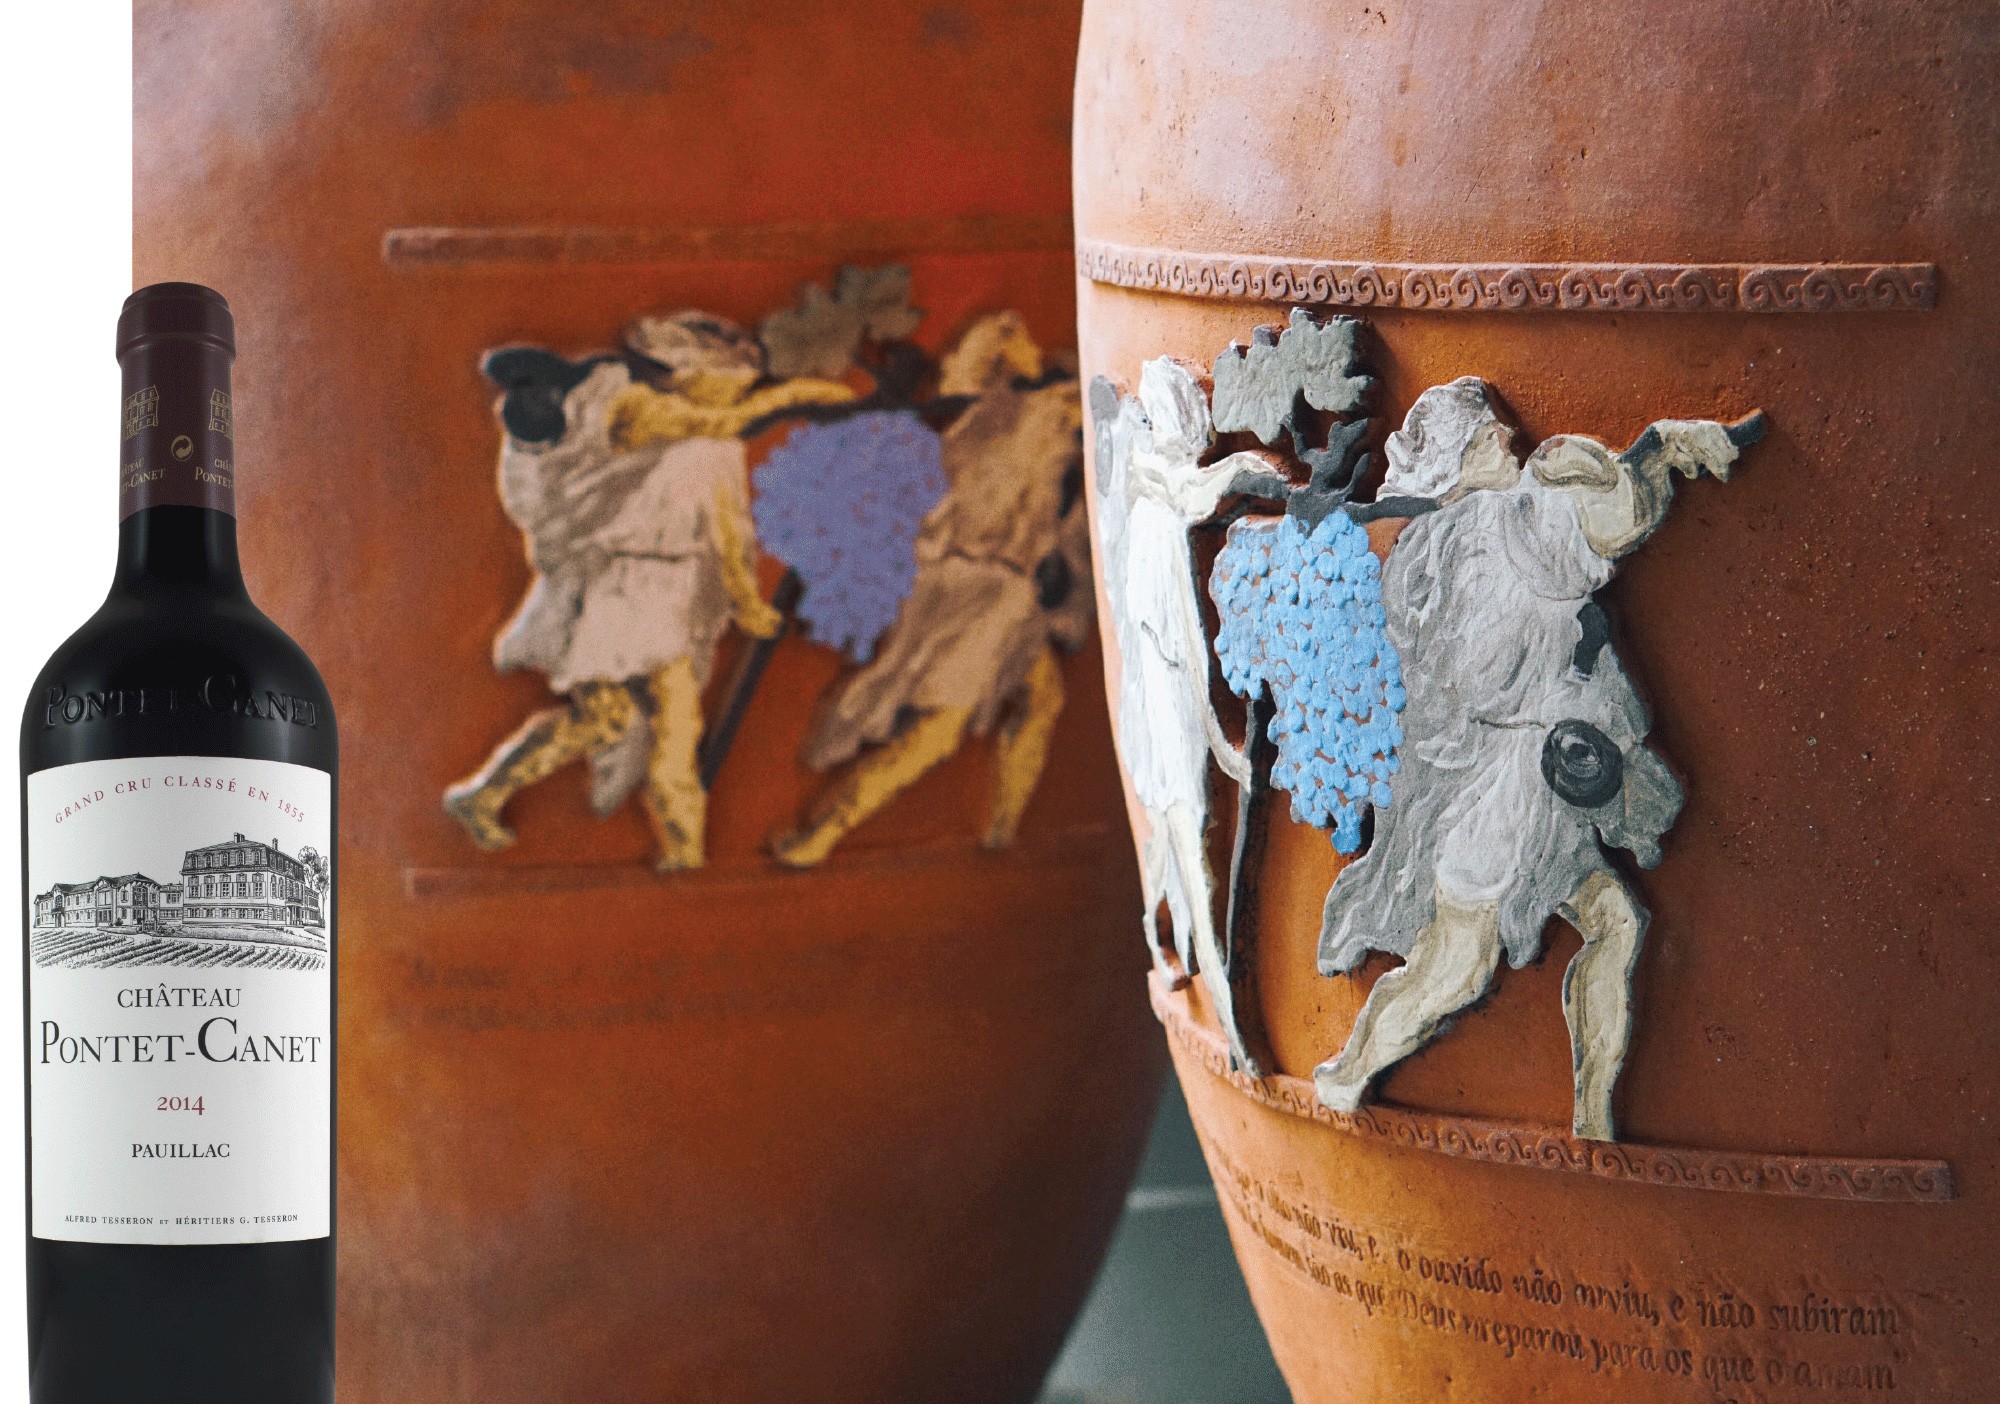 À moda antiga: À esquerda, garrafa do renomado Pontet-Cantet. À direita, mais ânforas de argila da Lidio Carraro (Foto: divulgação)